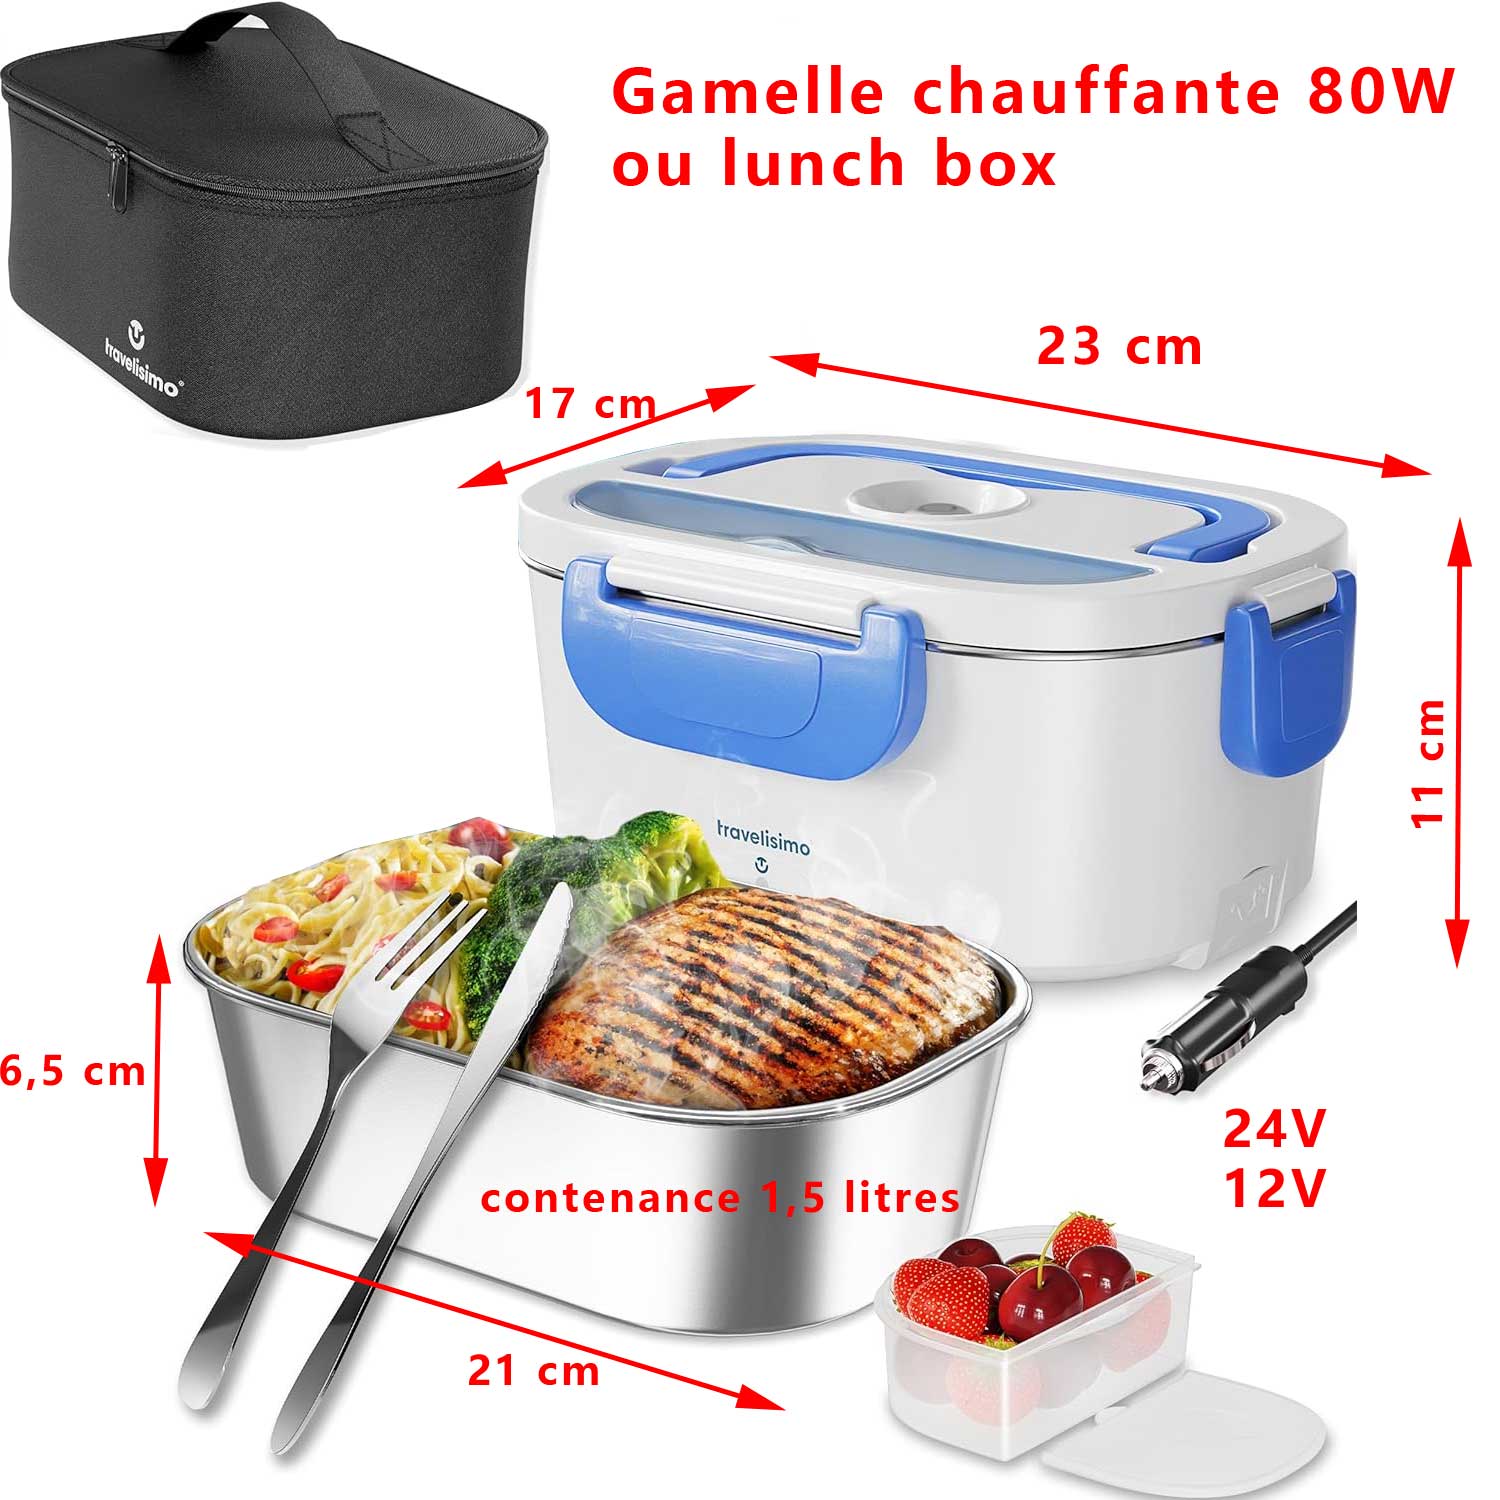 Gamelle Chauffante Électrique Rapide Chauffe en 25 minutes – Lunch